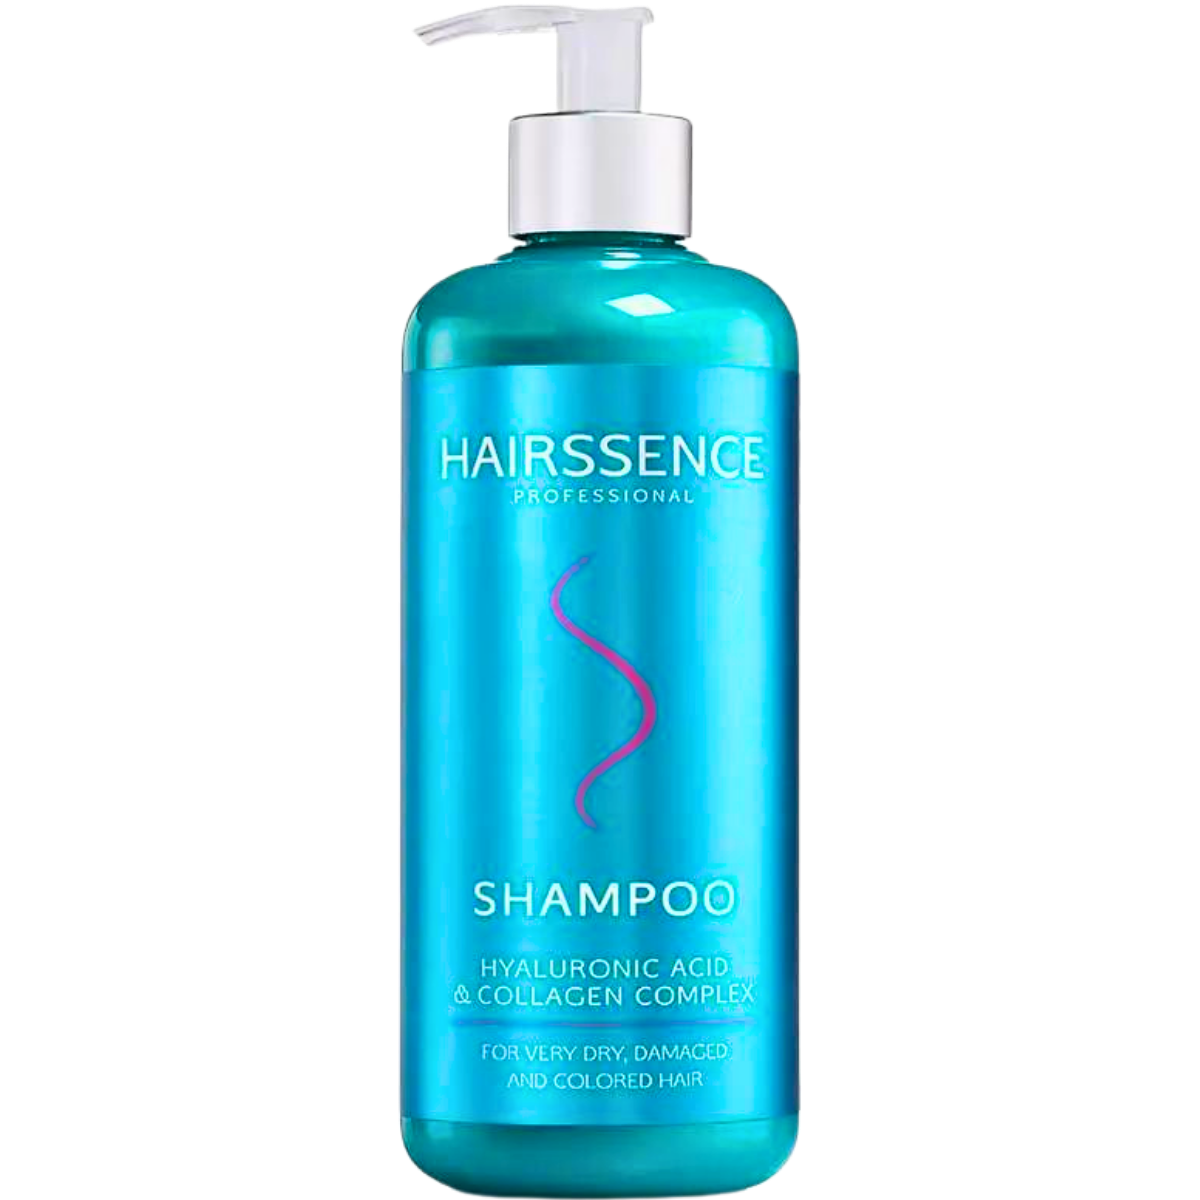 שמפו לשיער HAIRSSENCE חומצה היאלורונית וקולגן לשיער יבש, פגום וצבוע 500 מ"ל